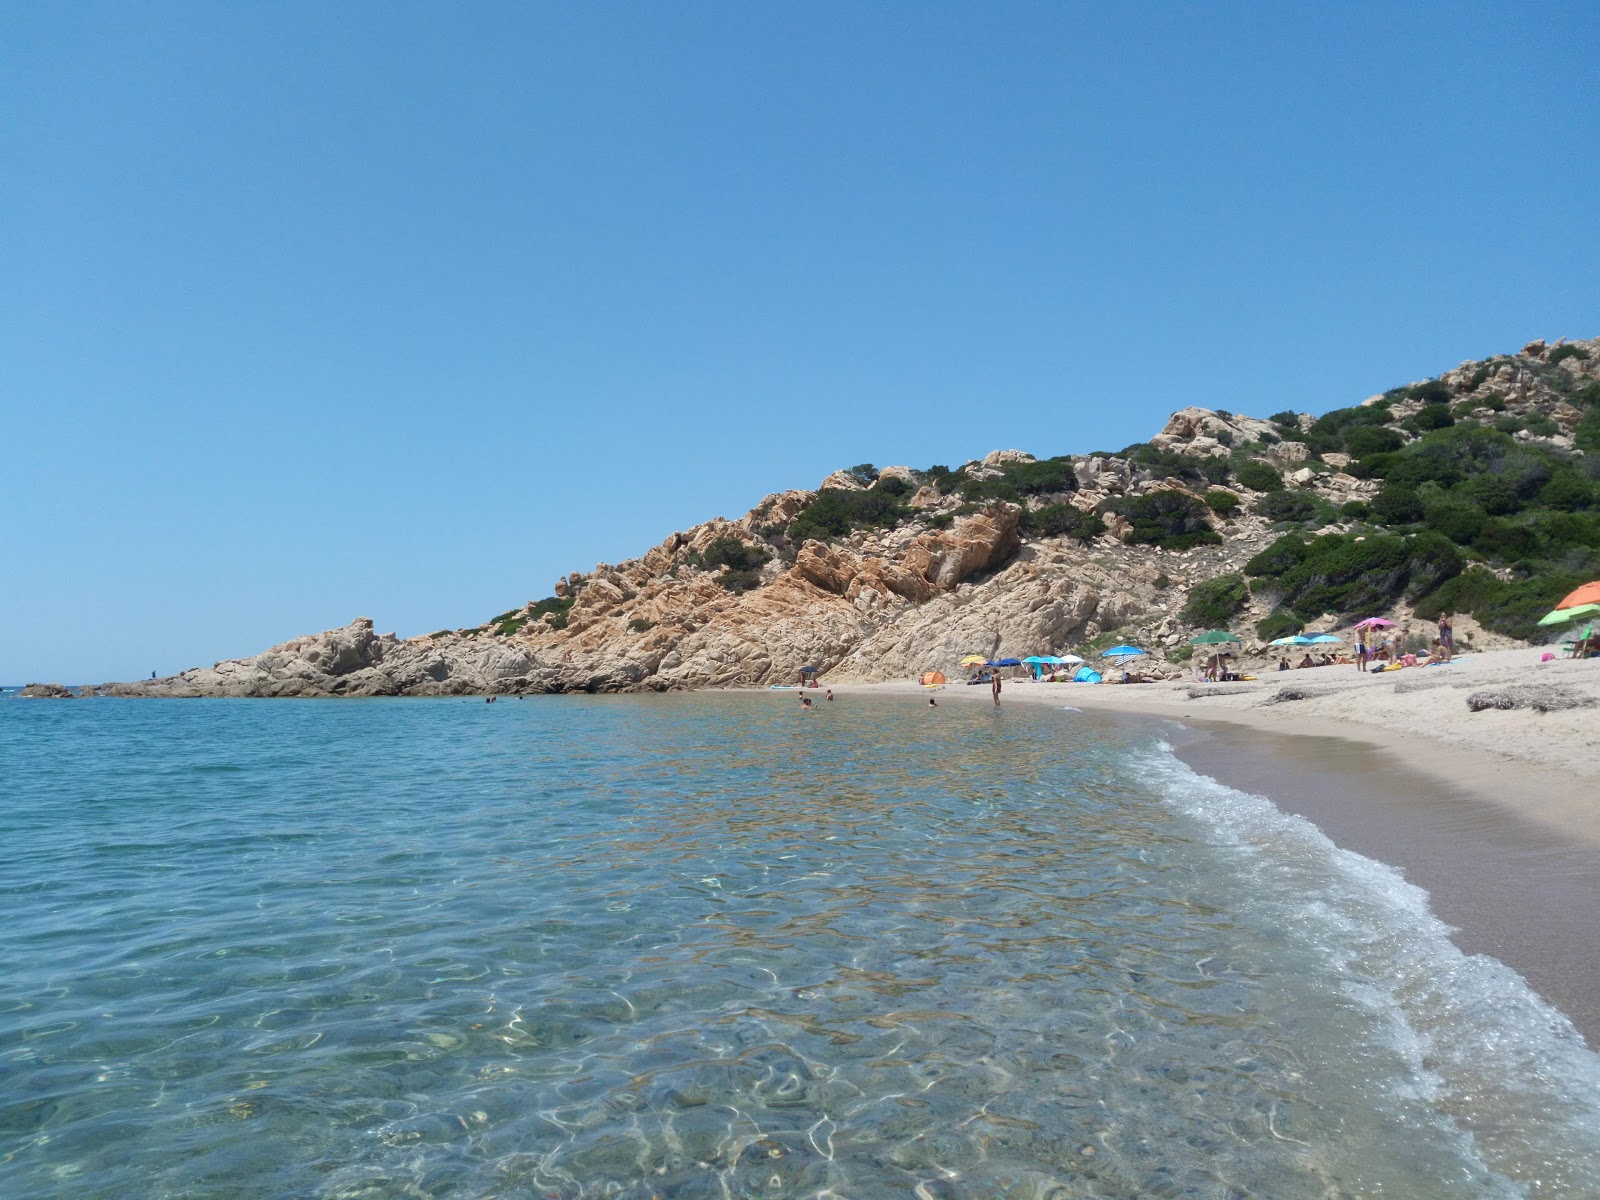 Zdjęcie Spiaggia Monti Russu i jego piękne krajobrazy